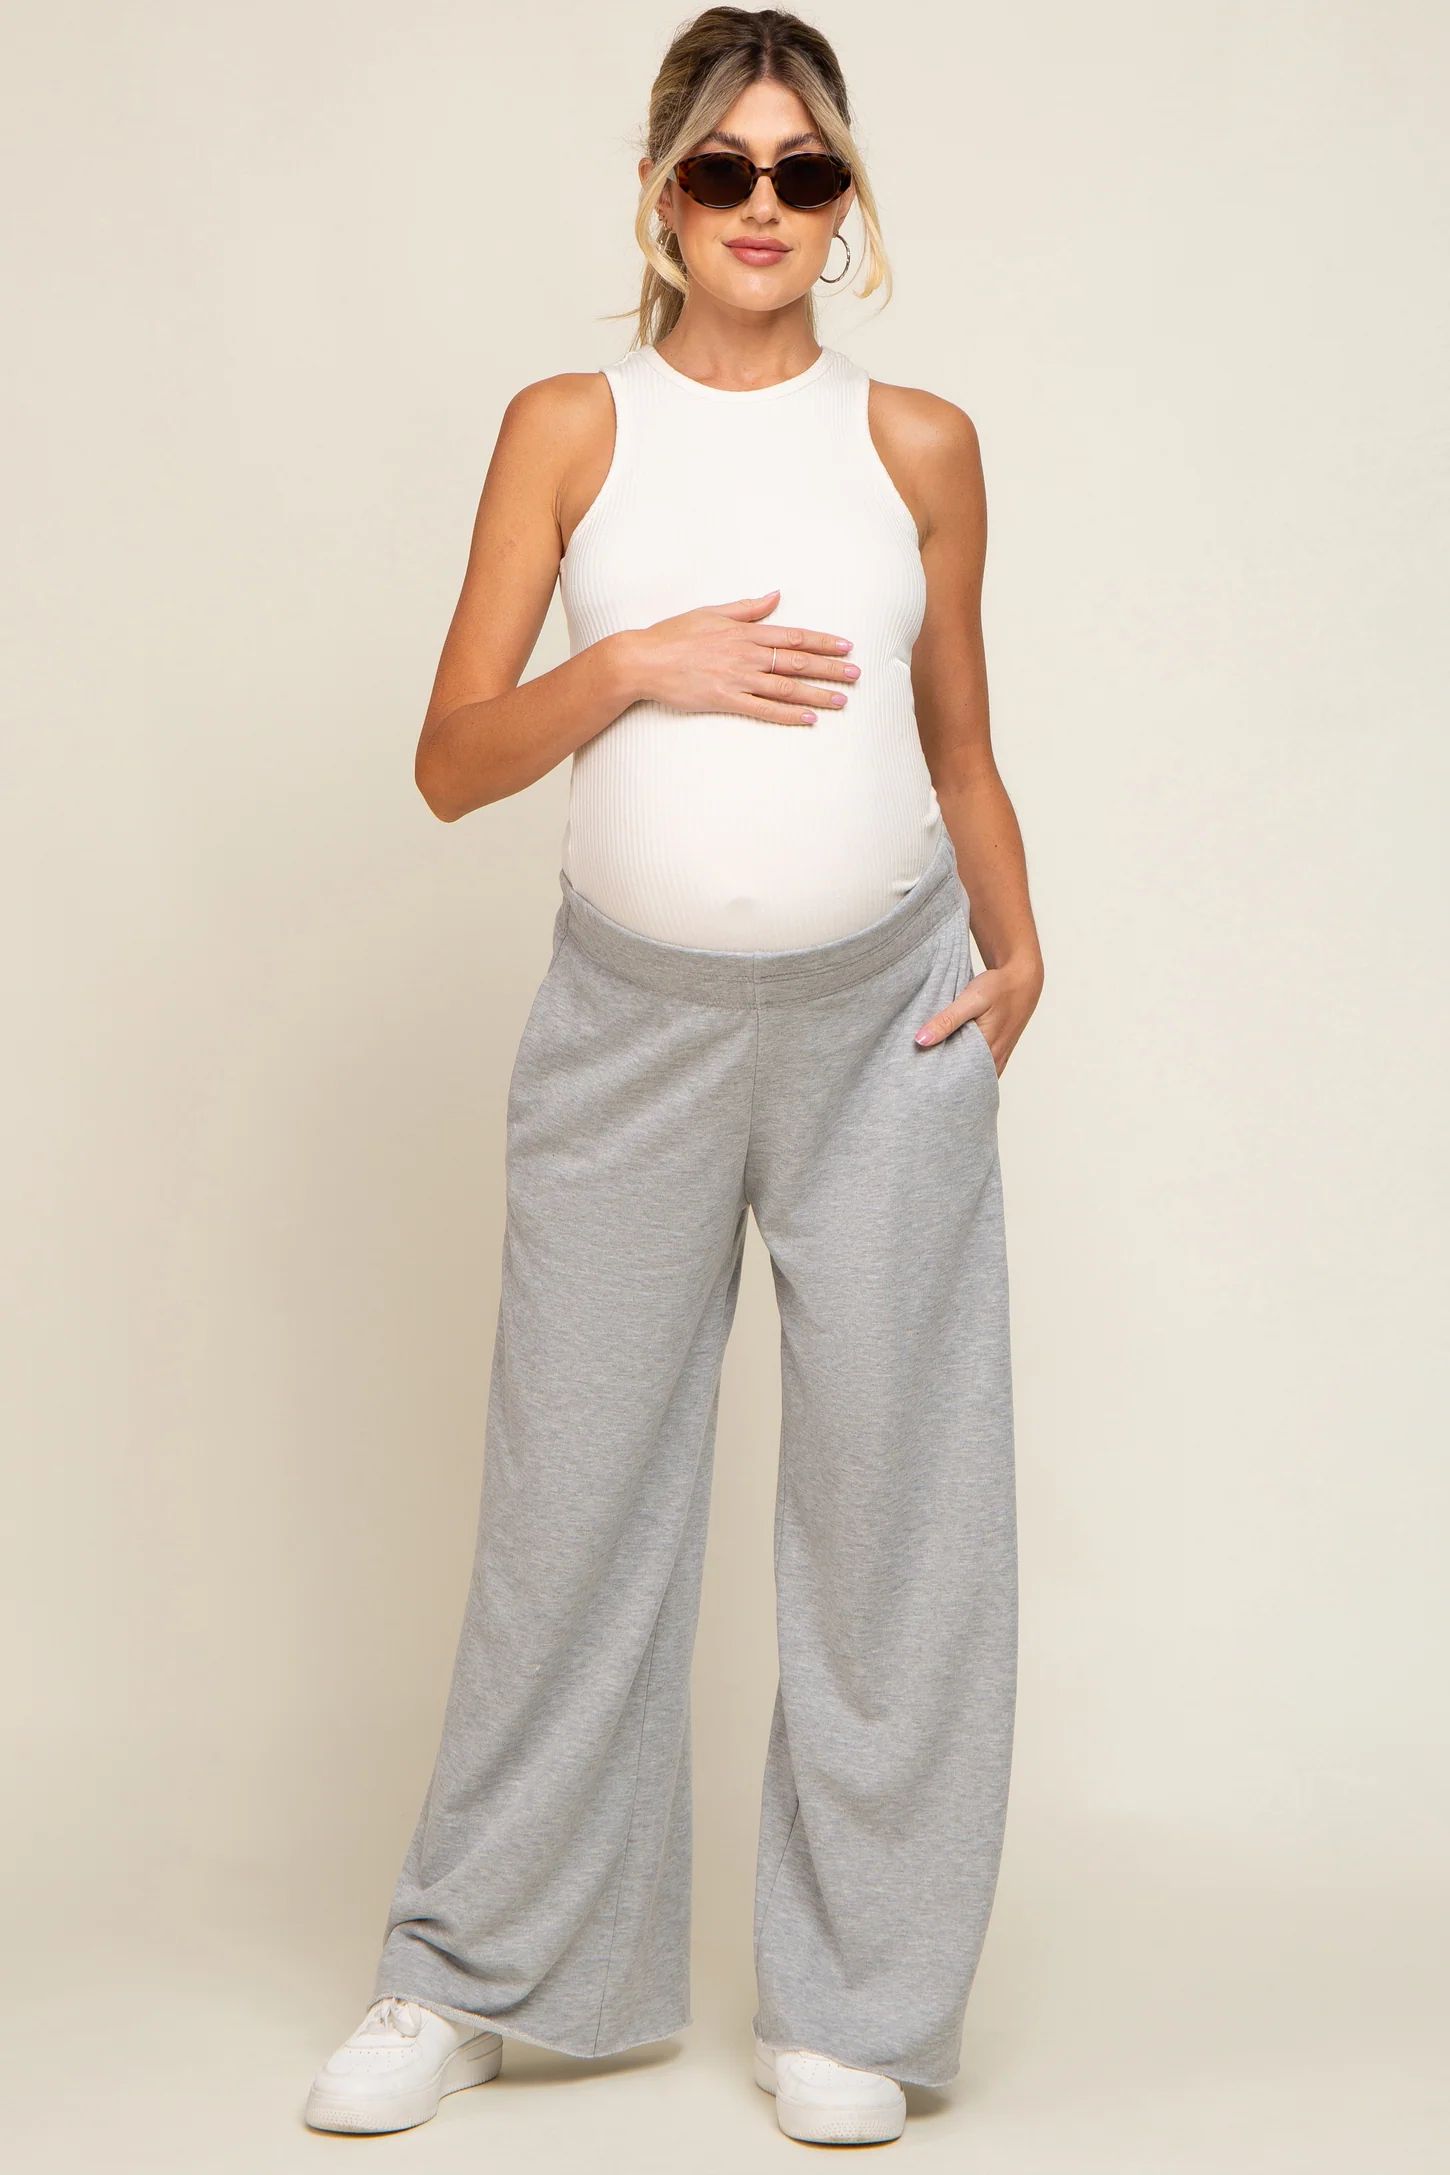 Heather Grey Soft Fleece Wide Leg Maternity Lounge Pants | PinkBlush Maternity